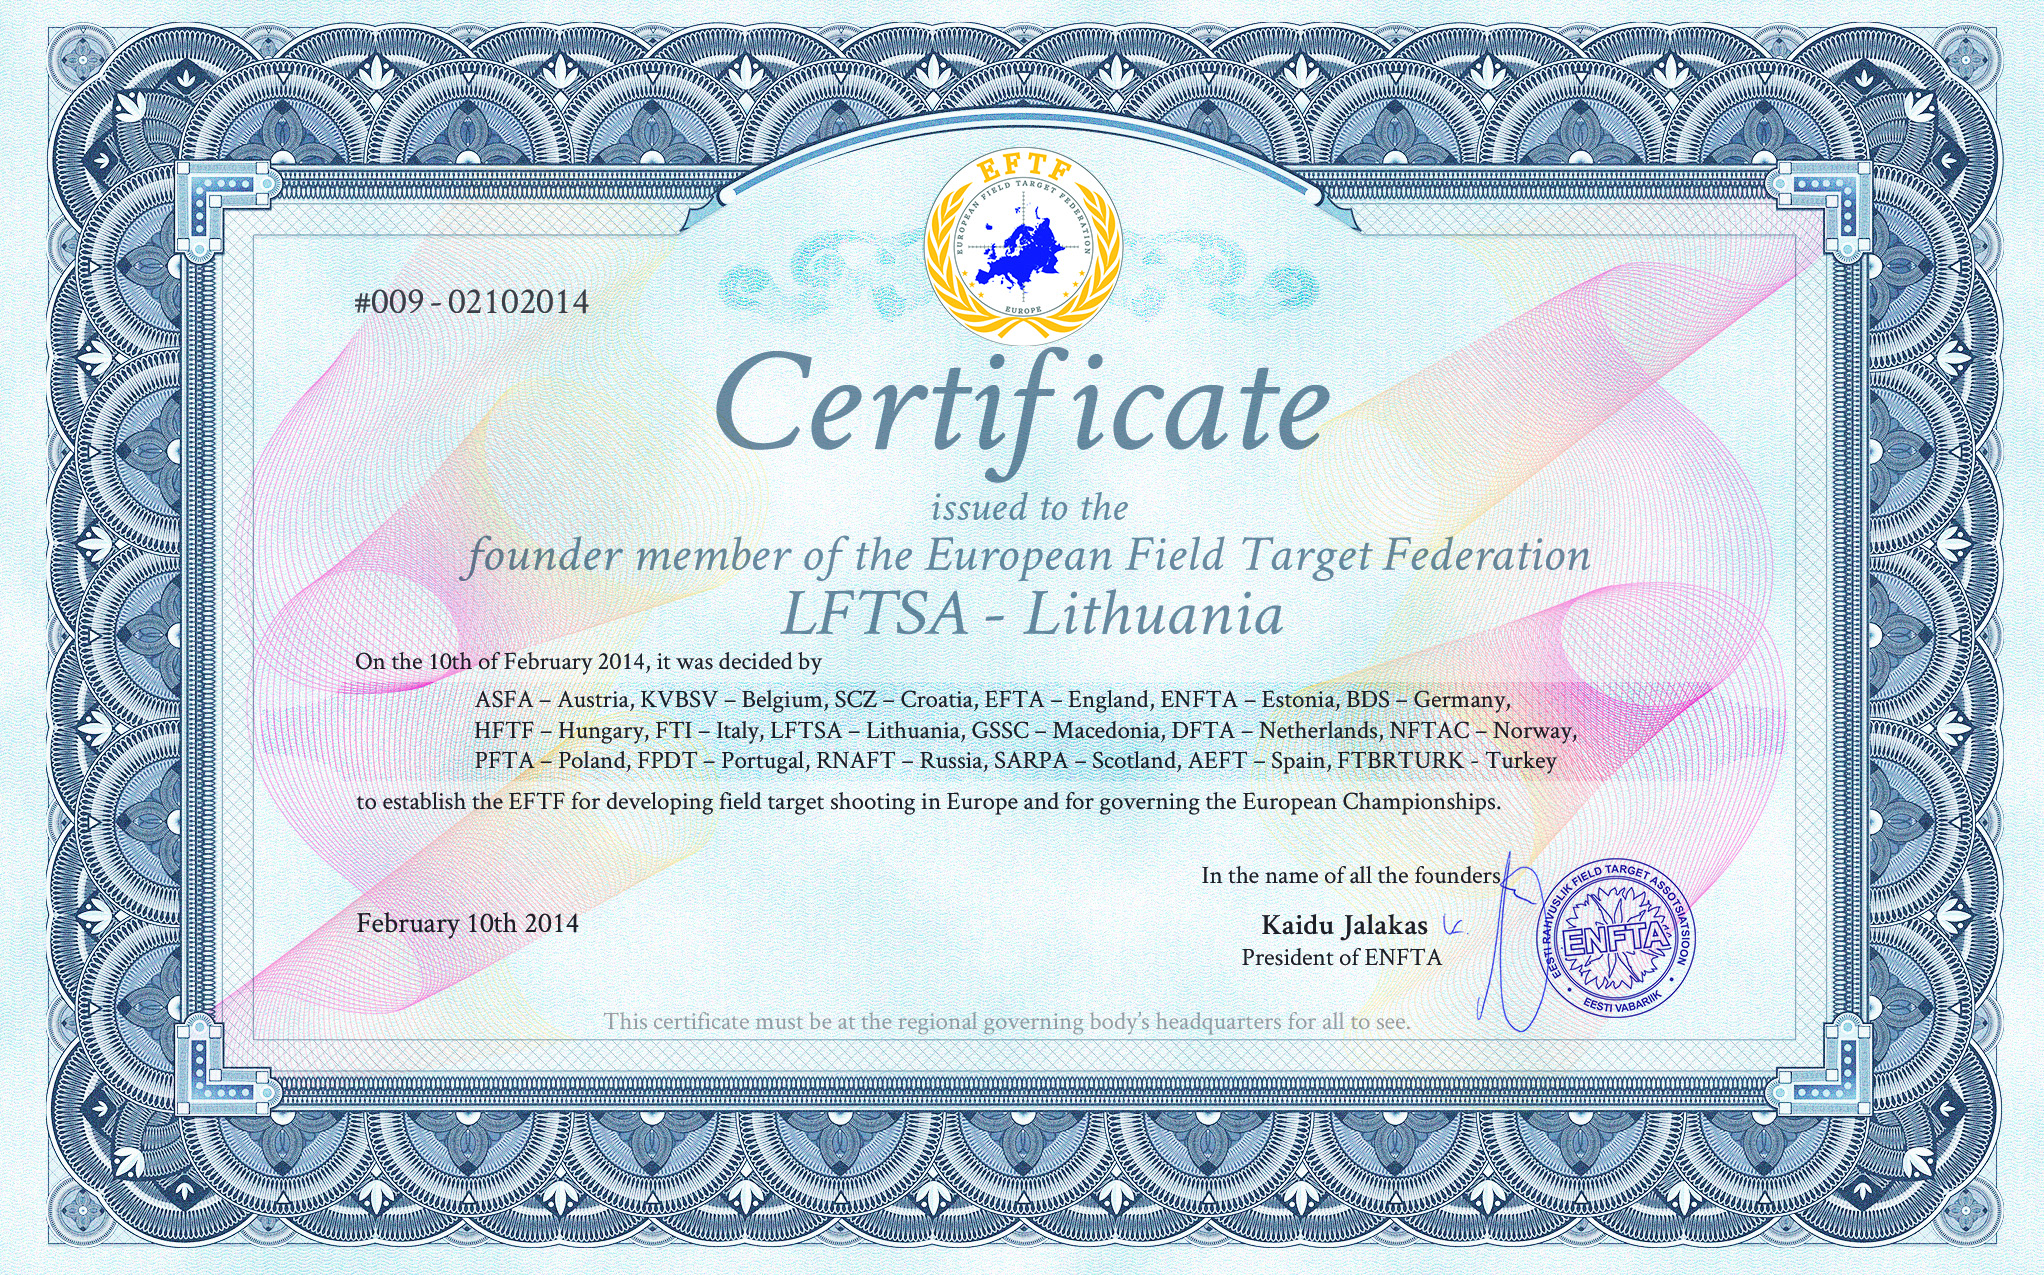 EFTF founder certificate for LFTSA - Lithuania.jpg